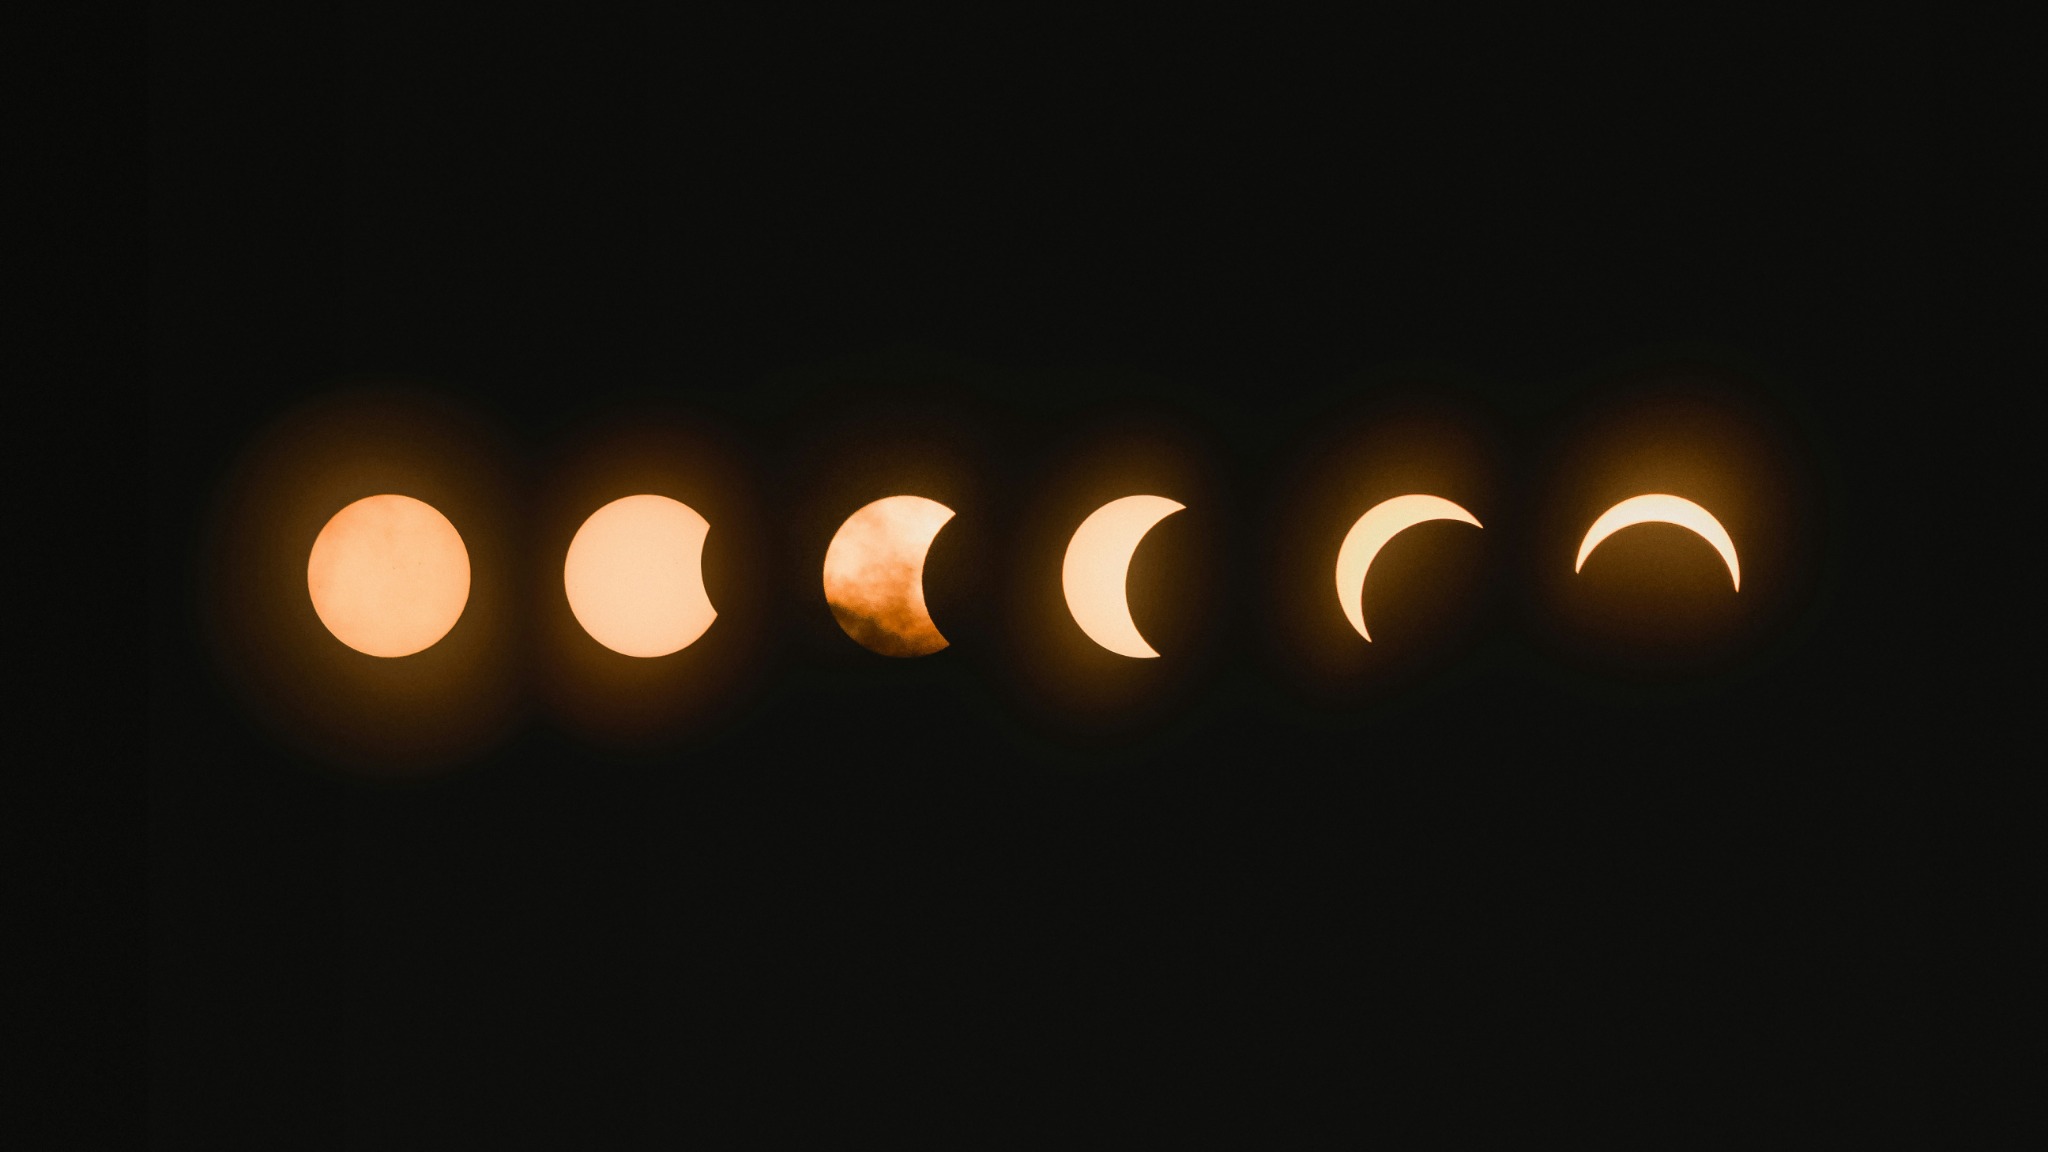 Lunar eclipse sequence